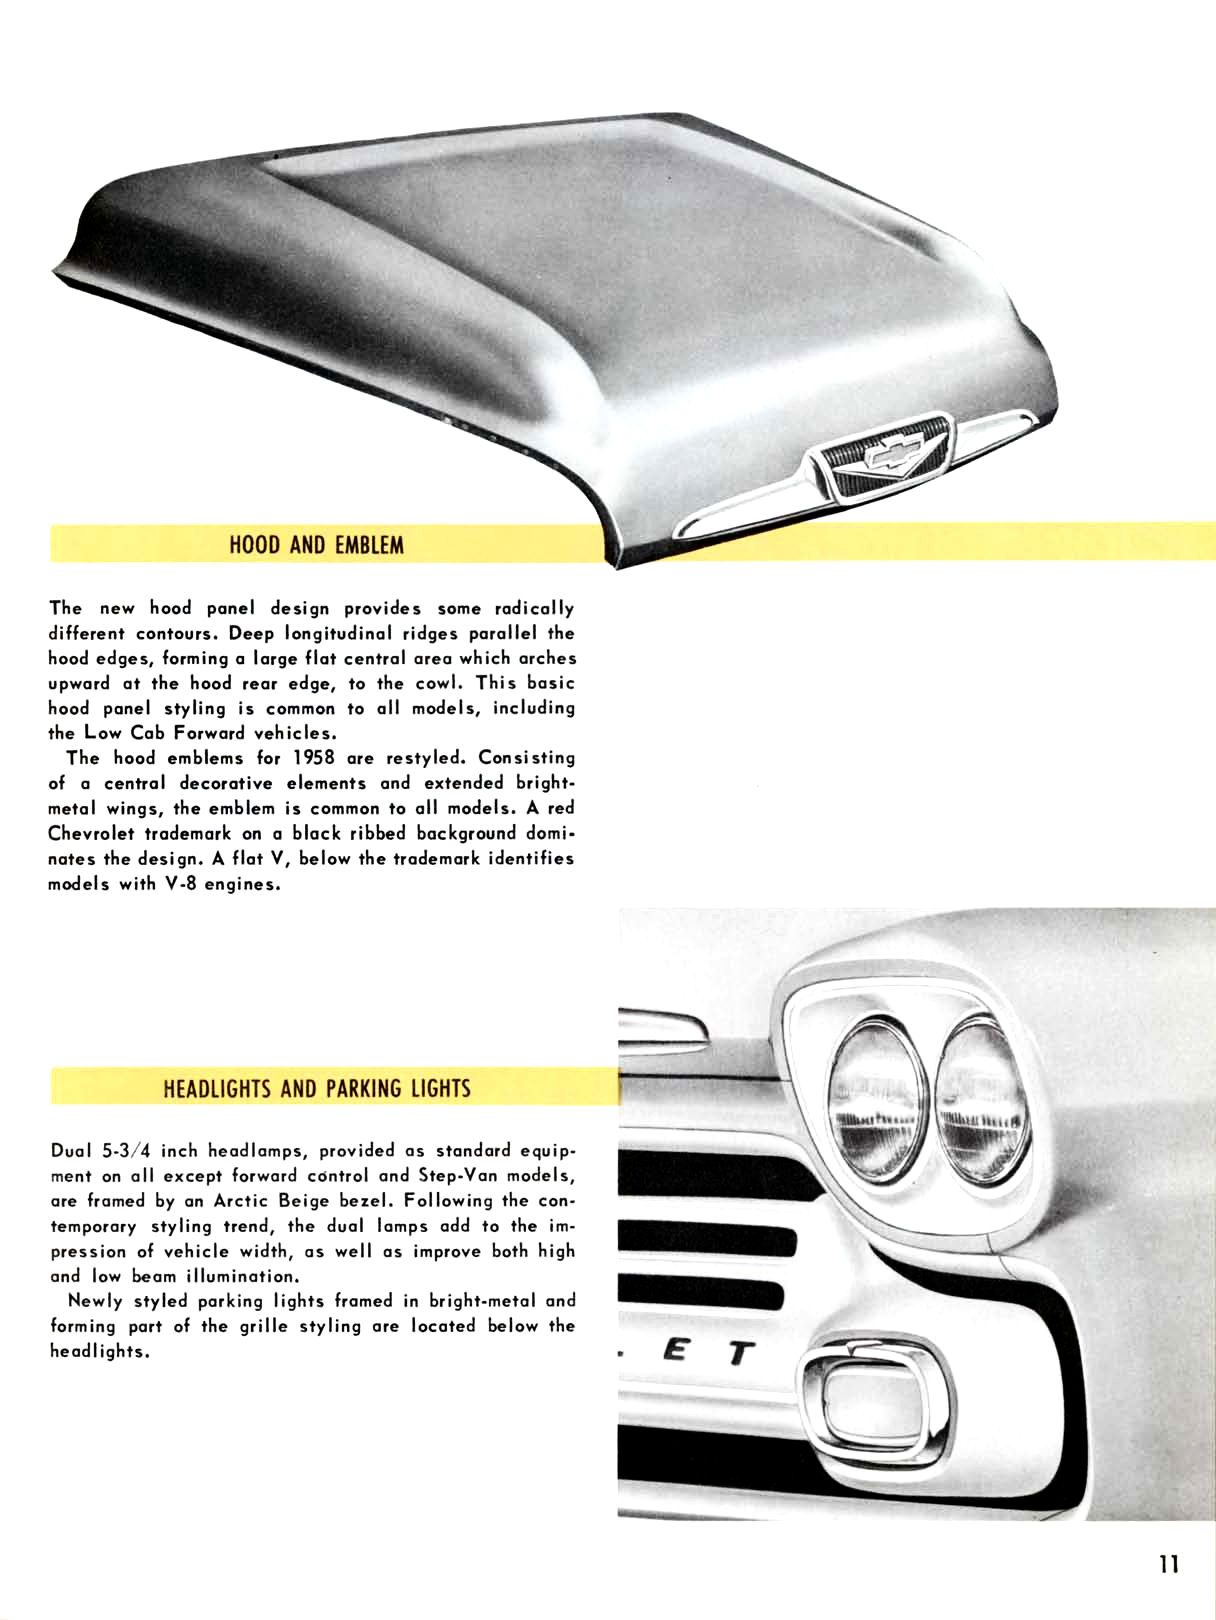 1958_Chevrolet_Truck_Engineering_Features-11